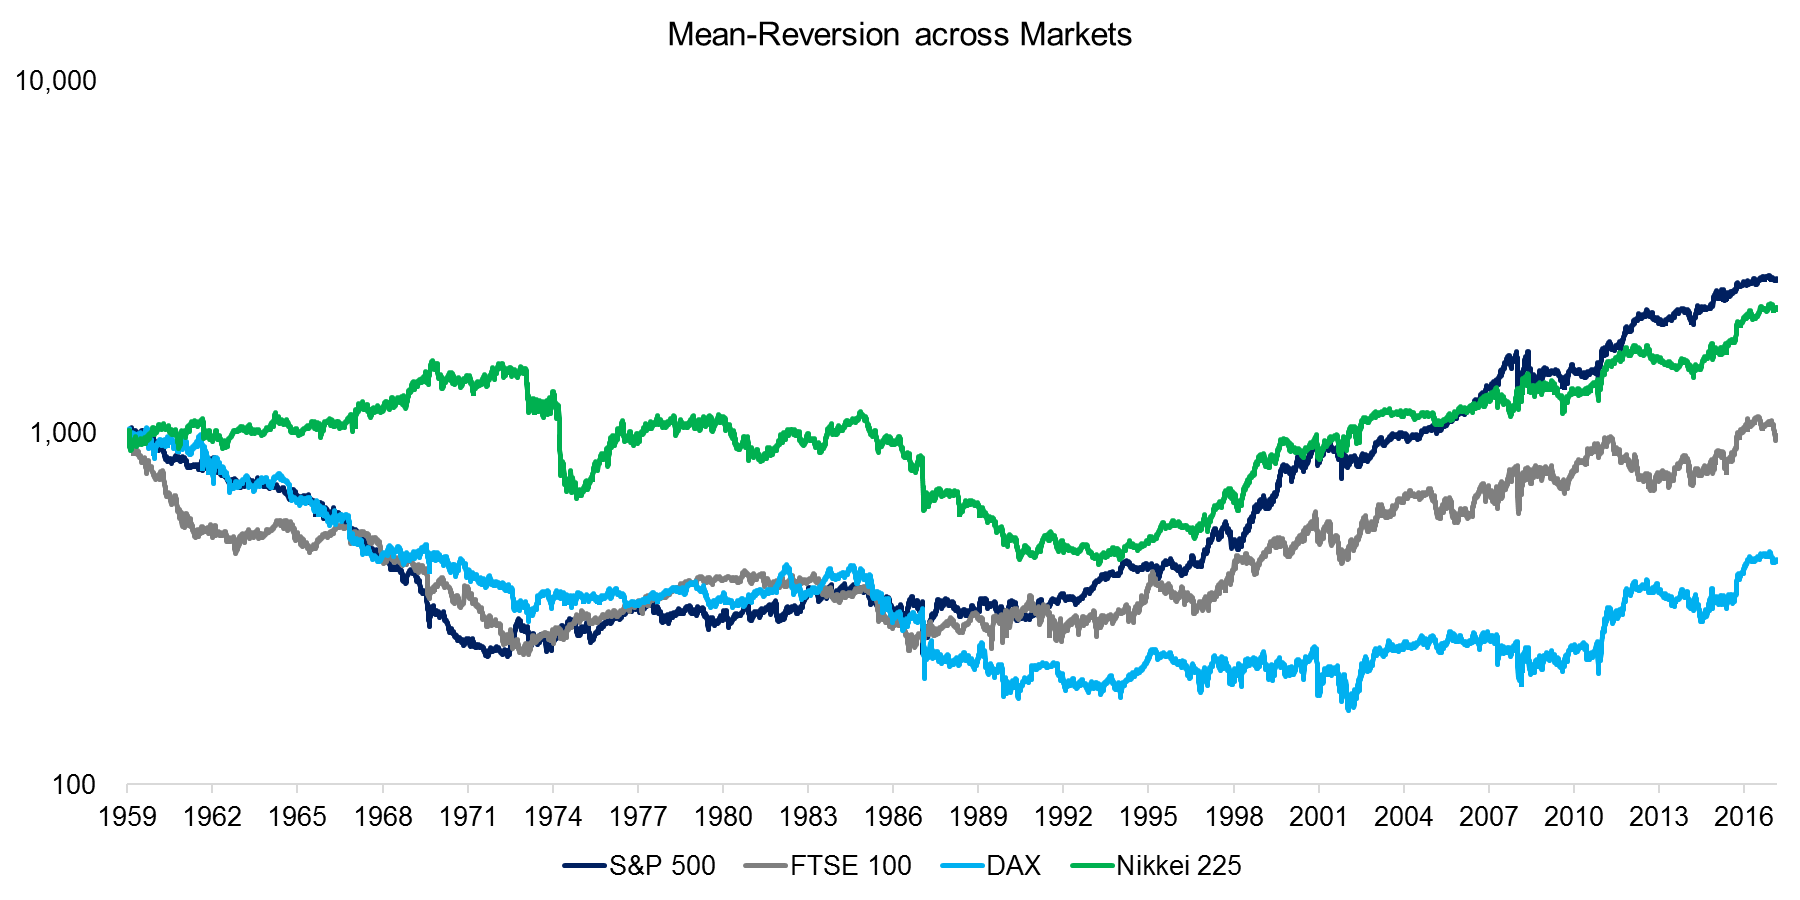 Mean-Reversion across Markets